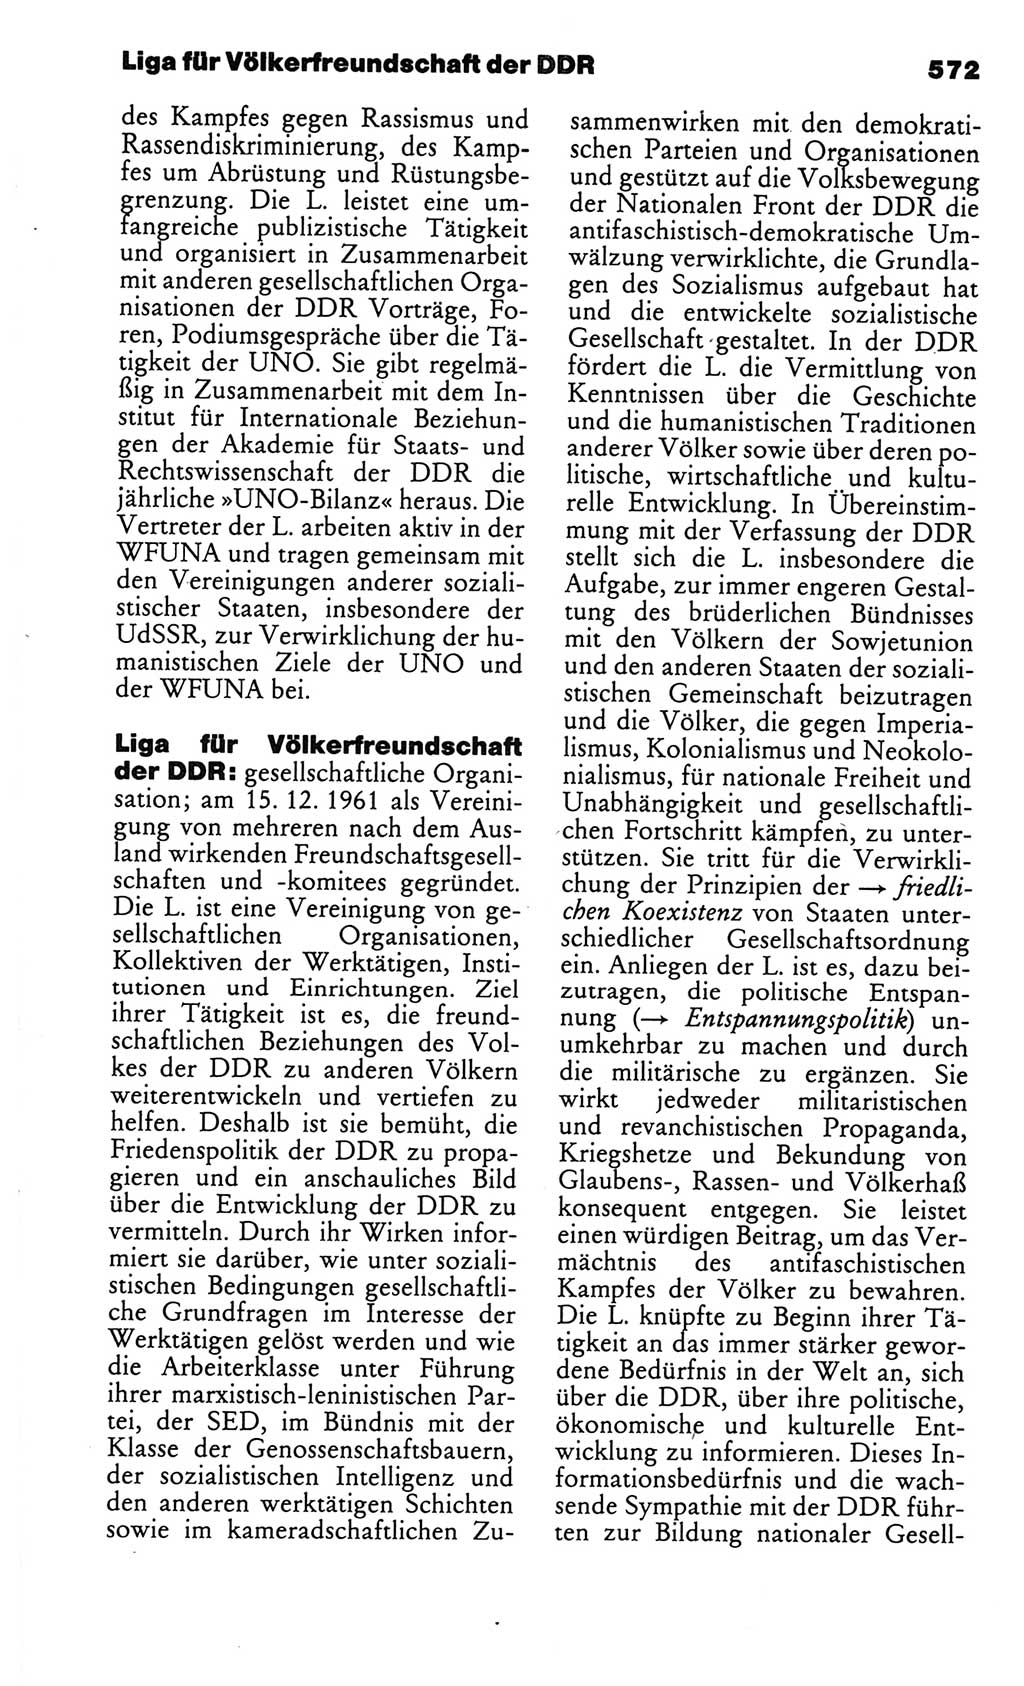 Kleines politisches Wörterbuch [Deutsche Demokratische Republik (DDR)] 1986, Seite 572 (Kl. pol. Wb. DDR 1986, S. 572)